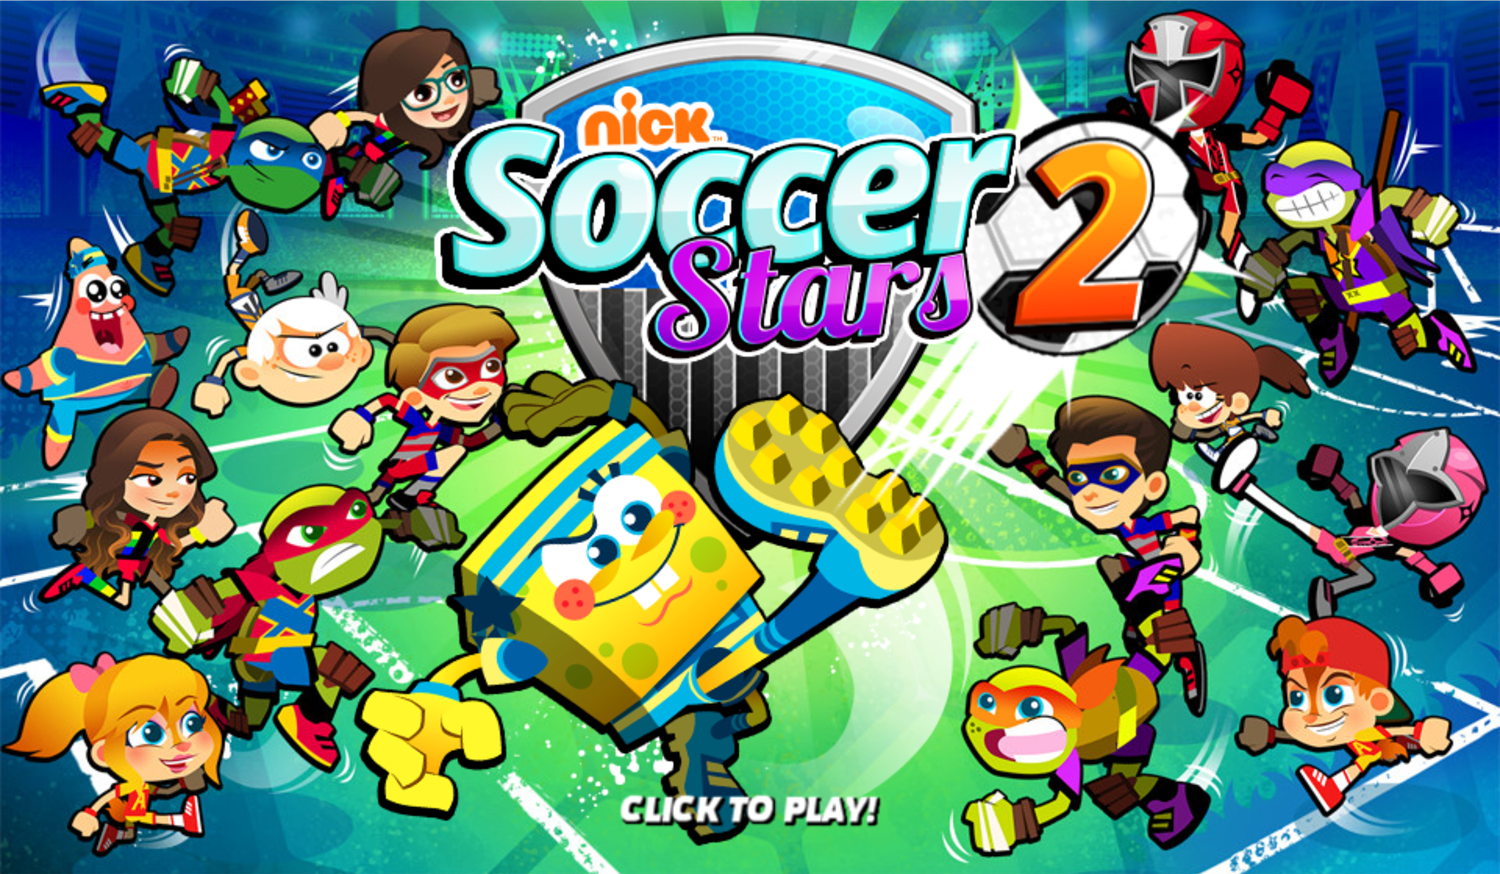 Nick Soccer Stars 2 Game Welcome Screen Screenshot.